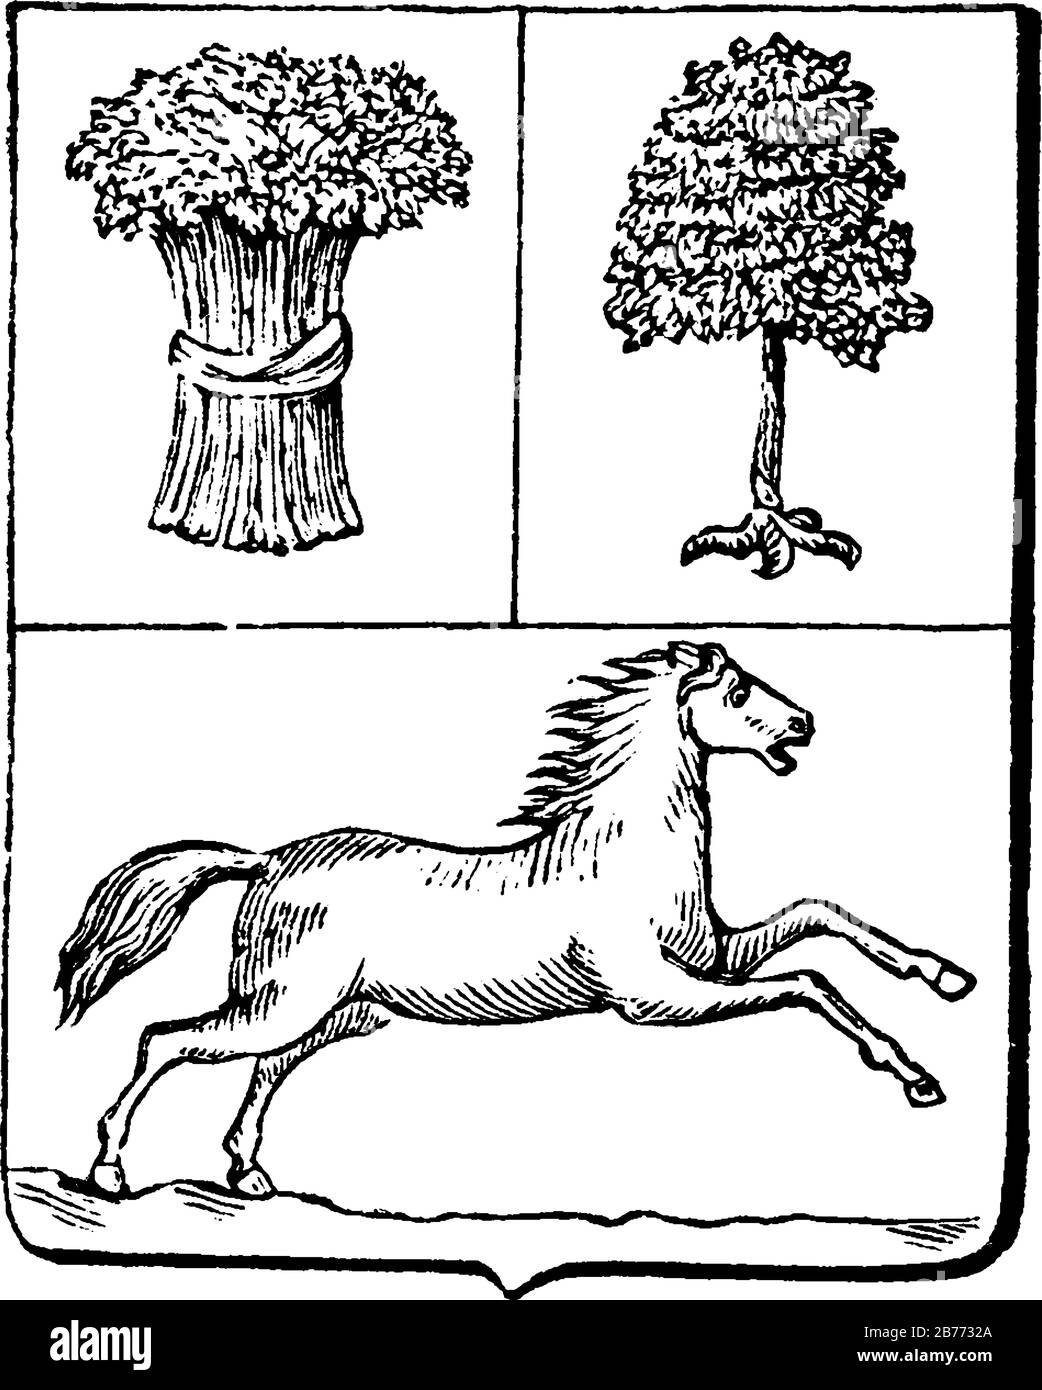 Das Wappen Venezuelas, dargestellt mit drei Abschnitten, einem Haufen von 24 zusammengebundenen Weizenhalmen, einem Baum mit Krallen an der Basis und einem wilden Pferd, vint Stock Vektor